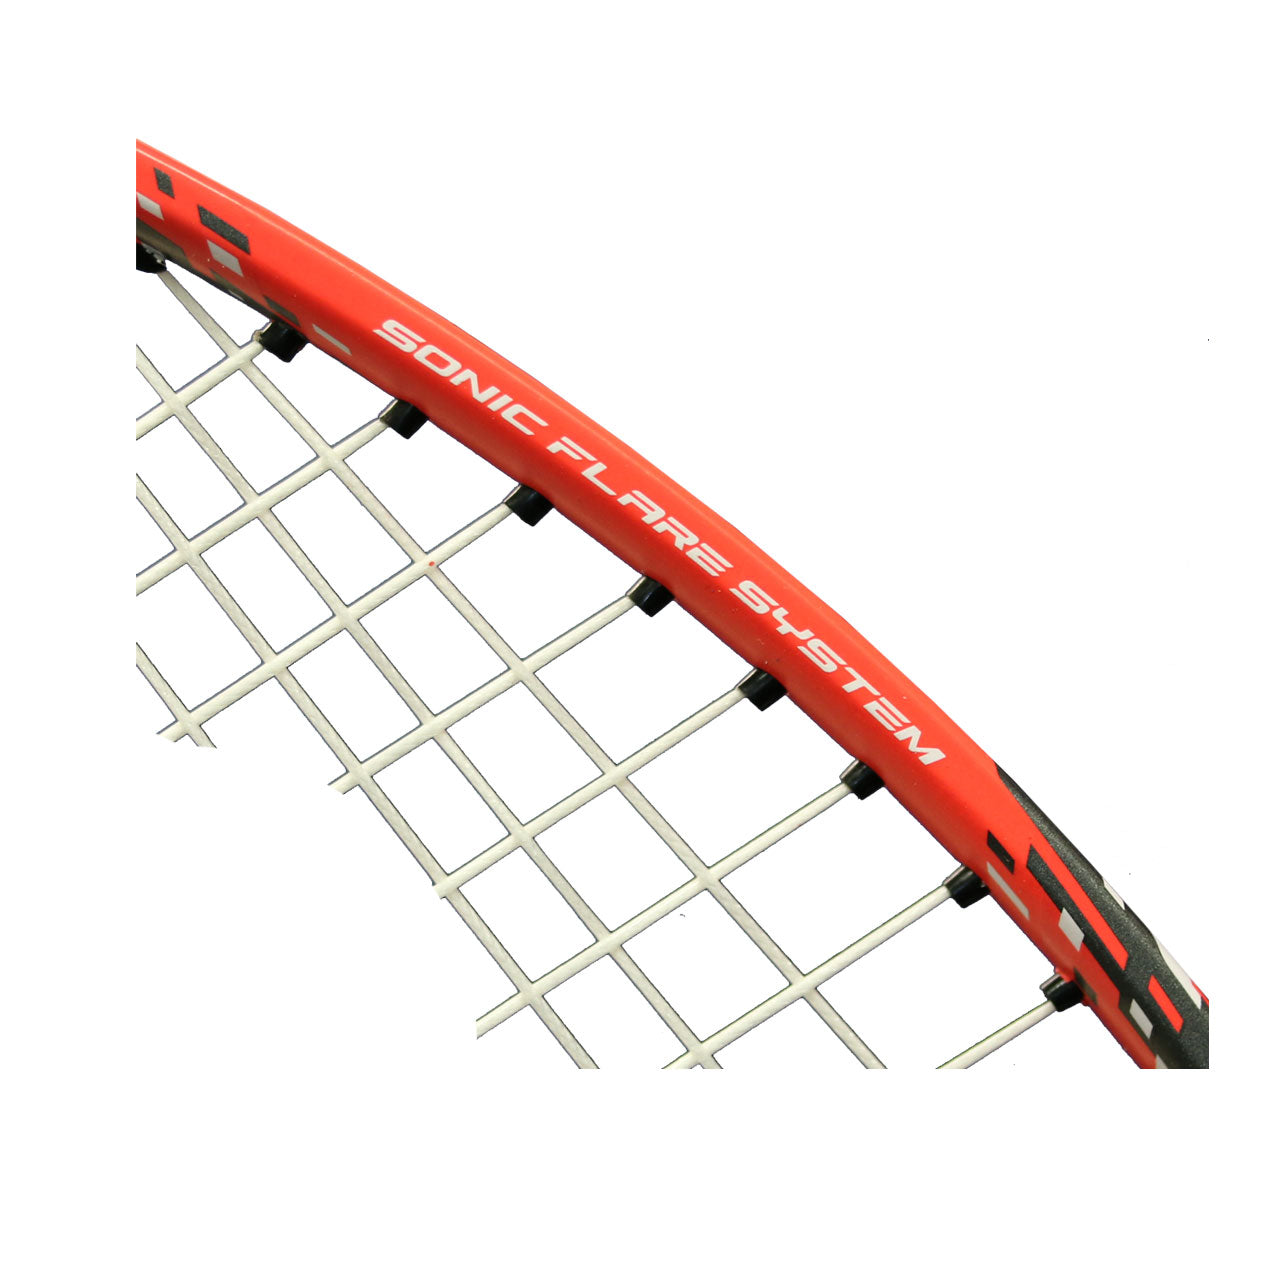 Yonex Nanoflare E13 Badminton Racket Strung (BLUE/RED)